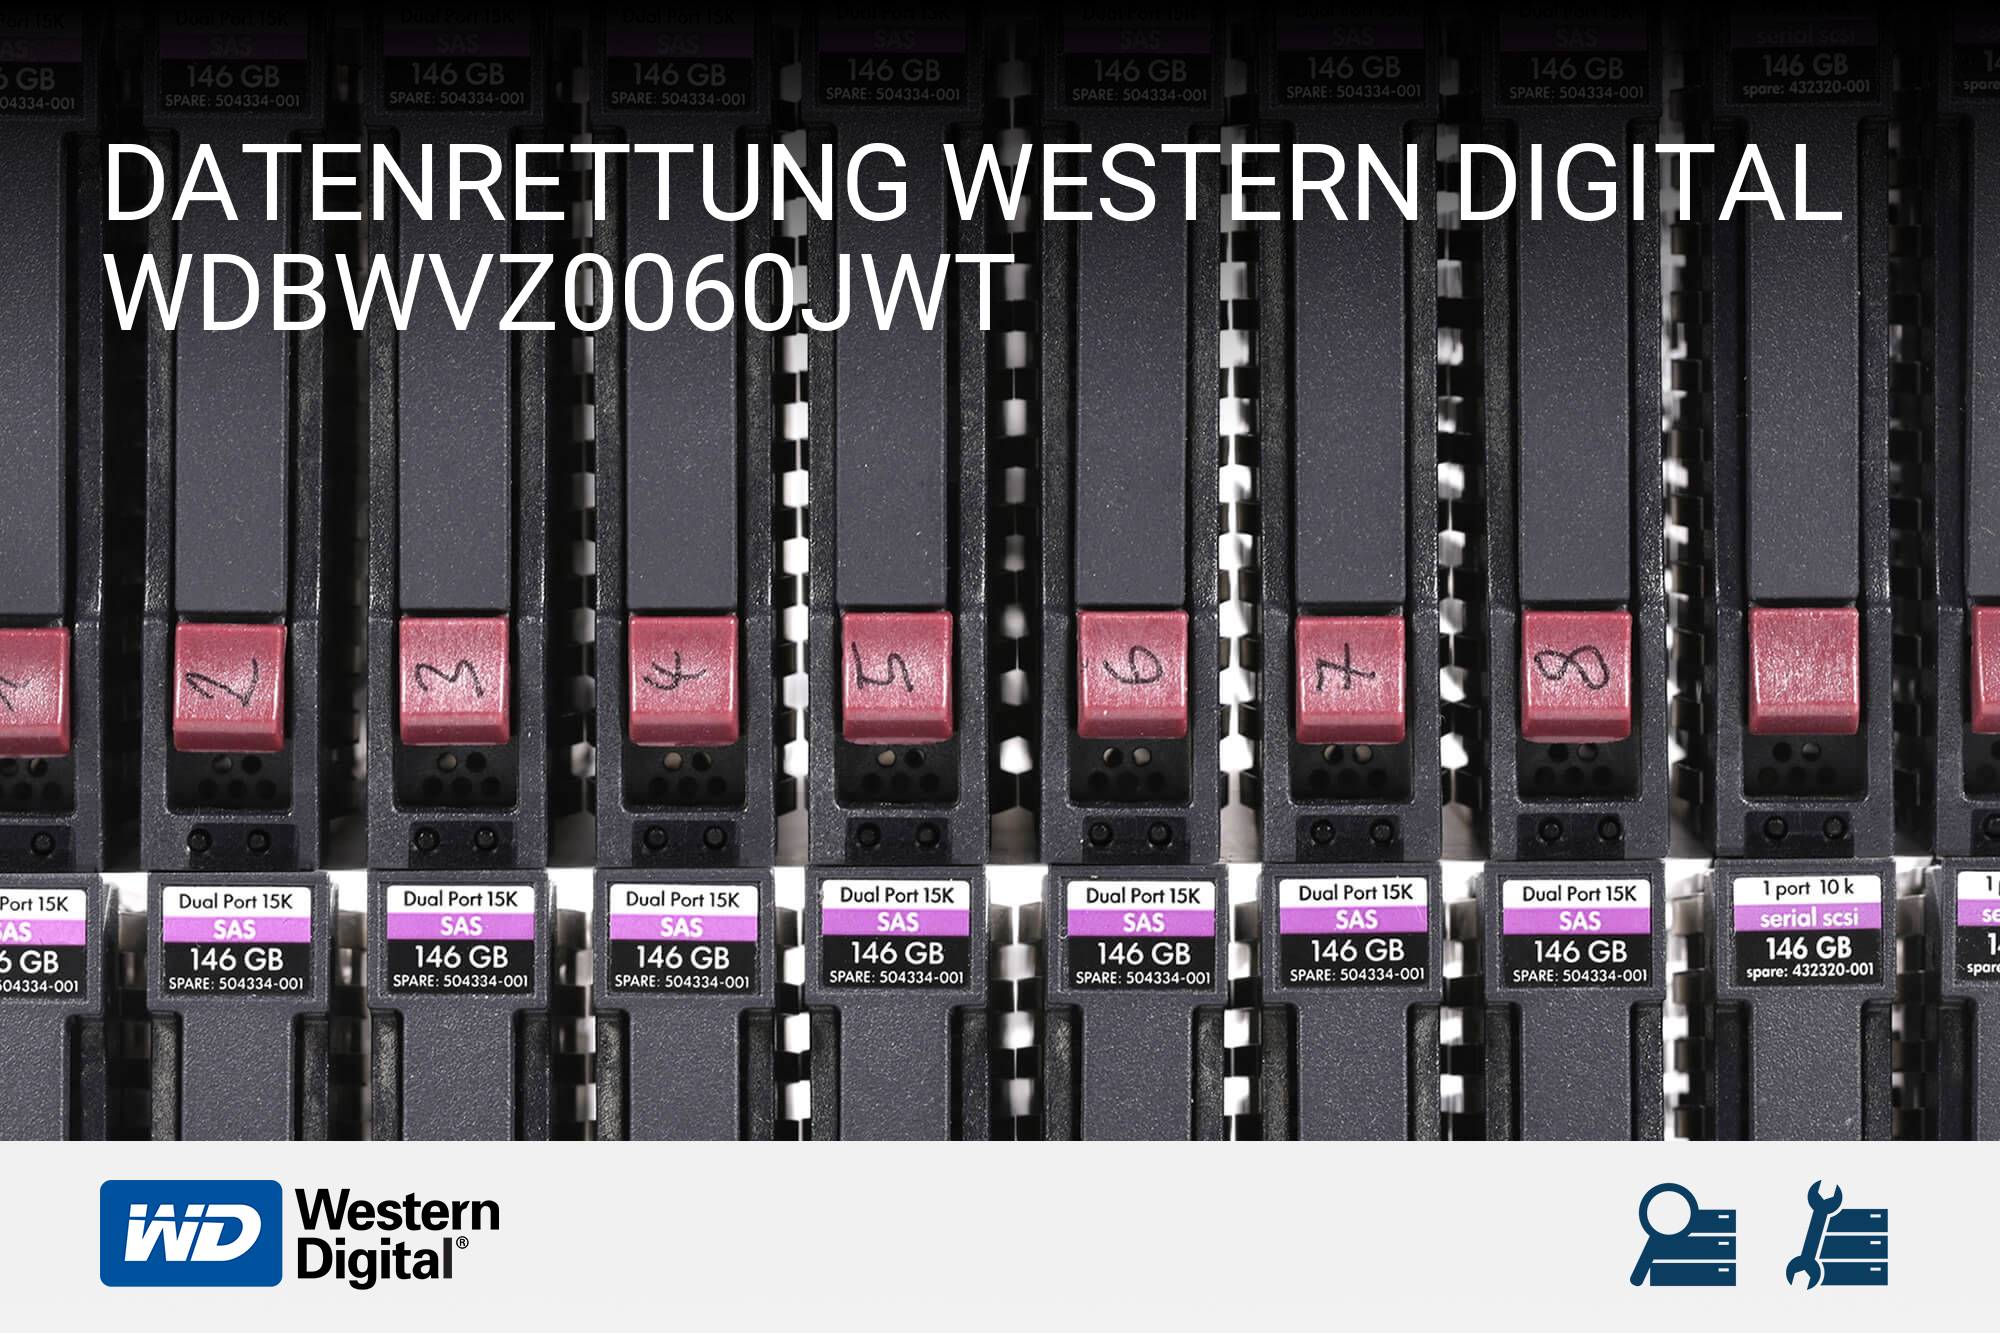 Western Digital WDBWVZ0060JWT